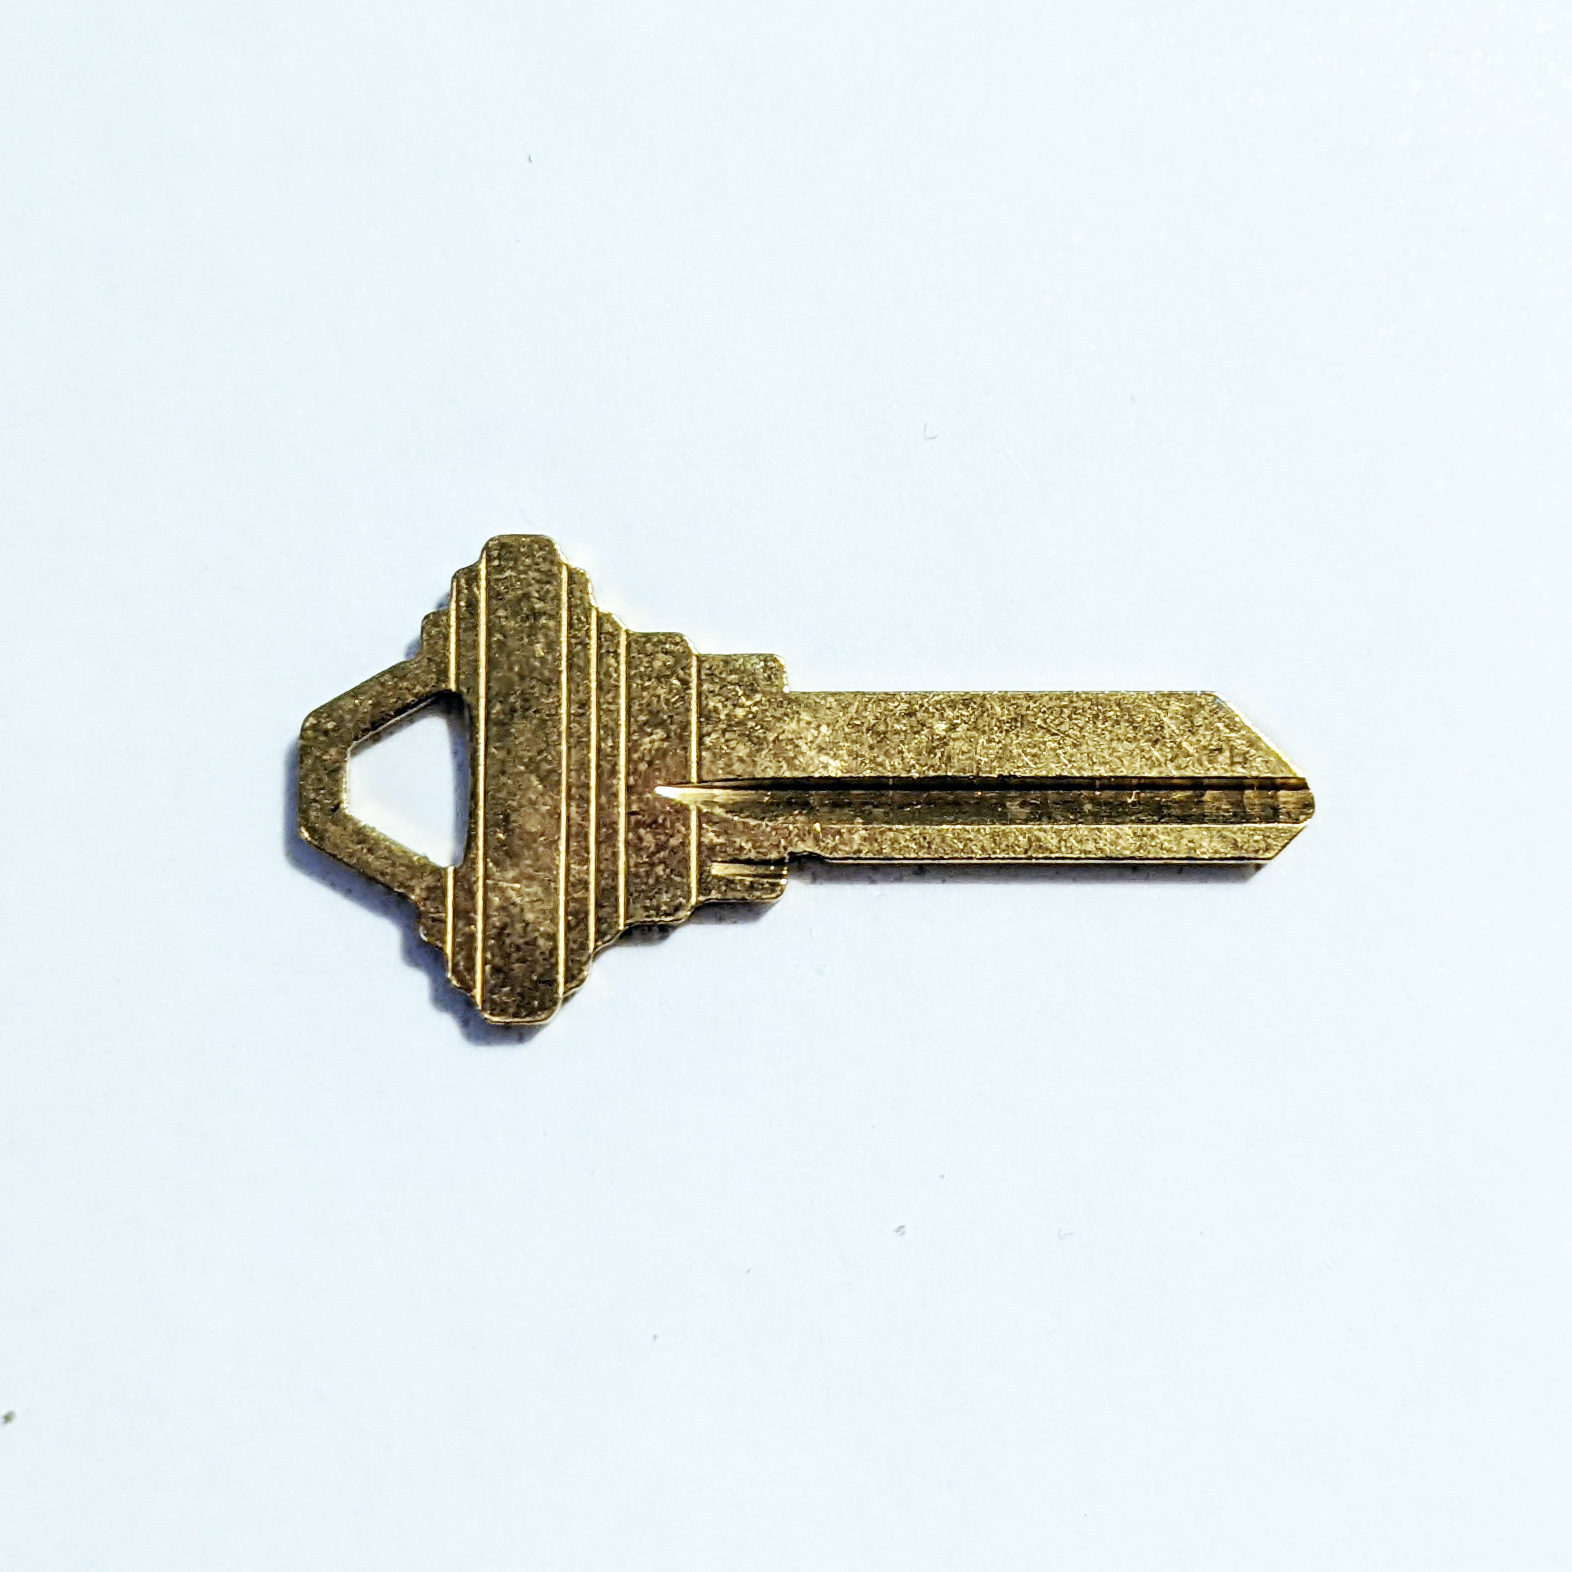 Schlage SC1 House Keys Cut by Code OR Random Key 5-pin Copy - Bulk Pricing!